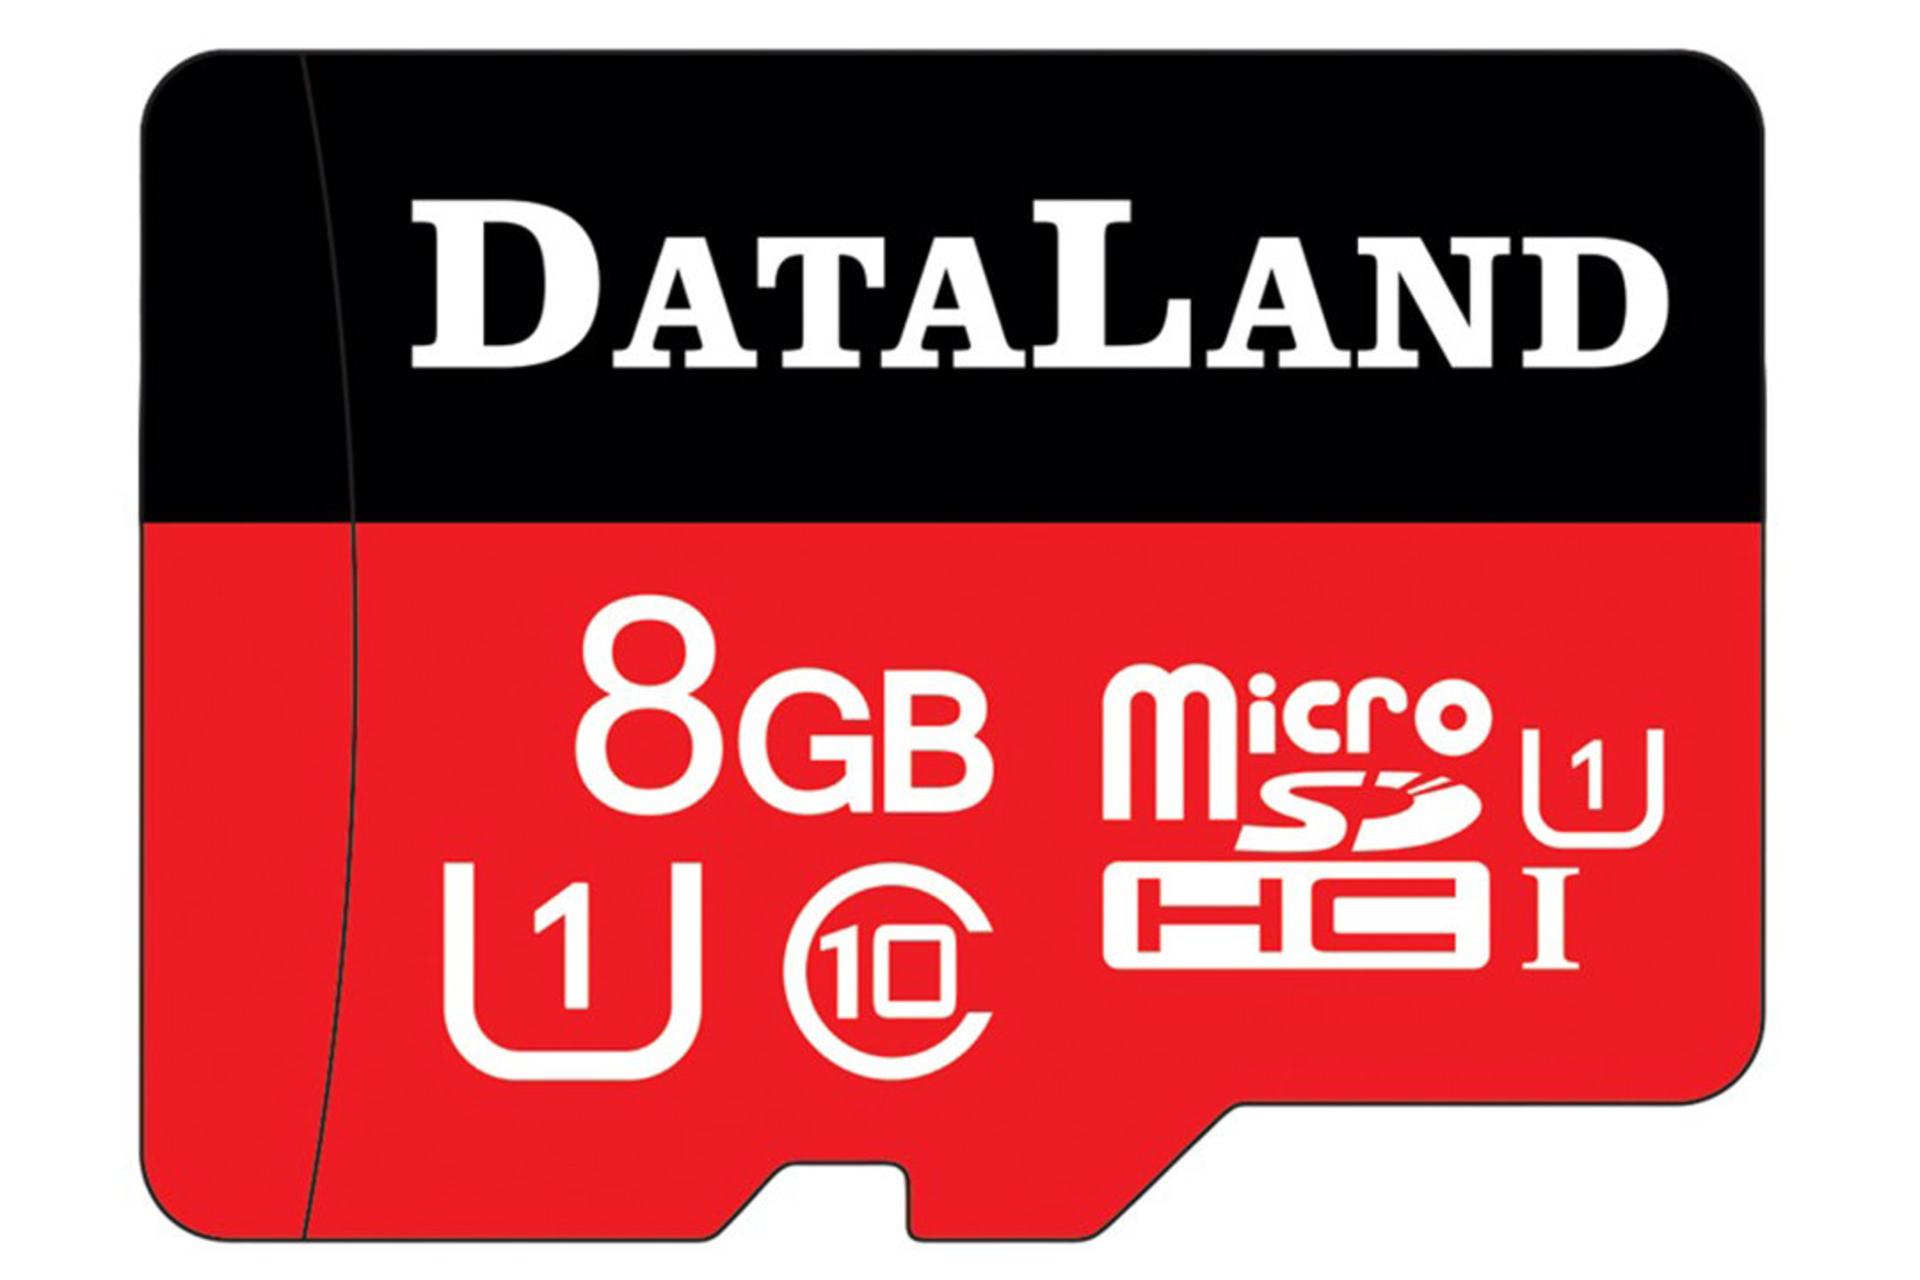 مرجع متخصصين ايران DataLand 333x microSDHC Class 10 UHS-I U1 8GB